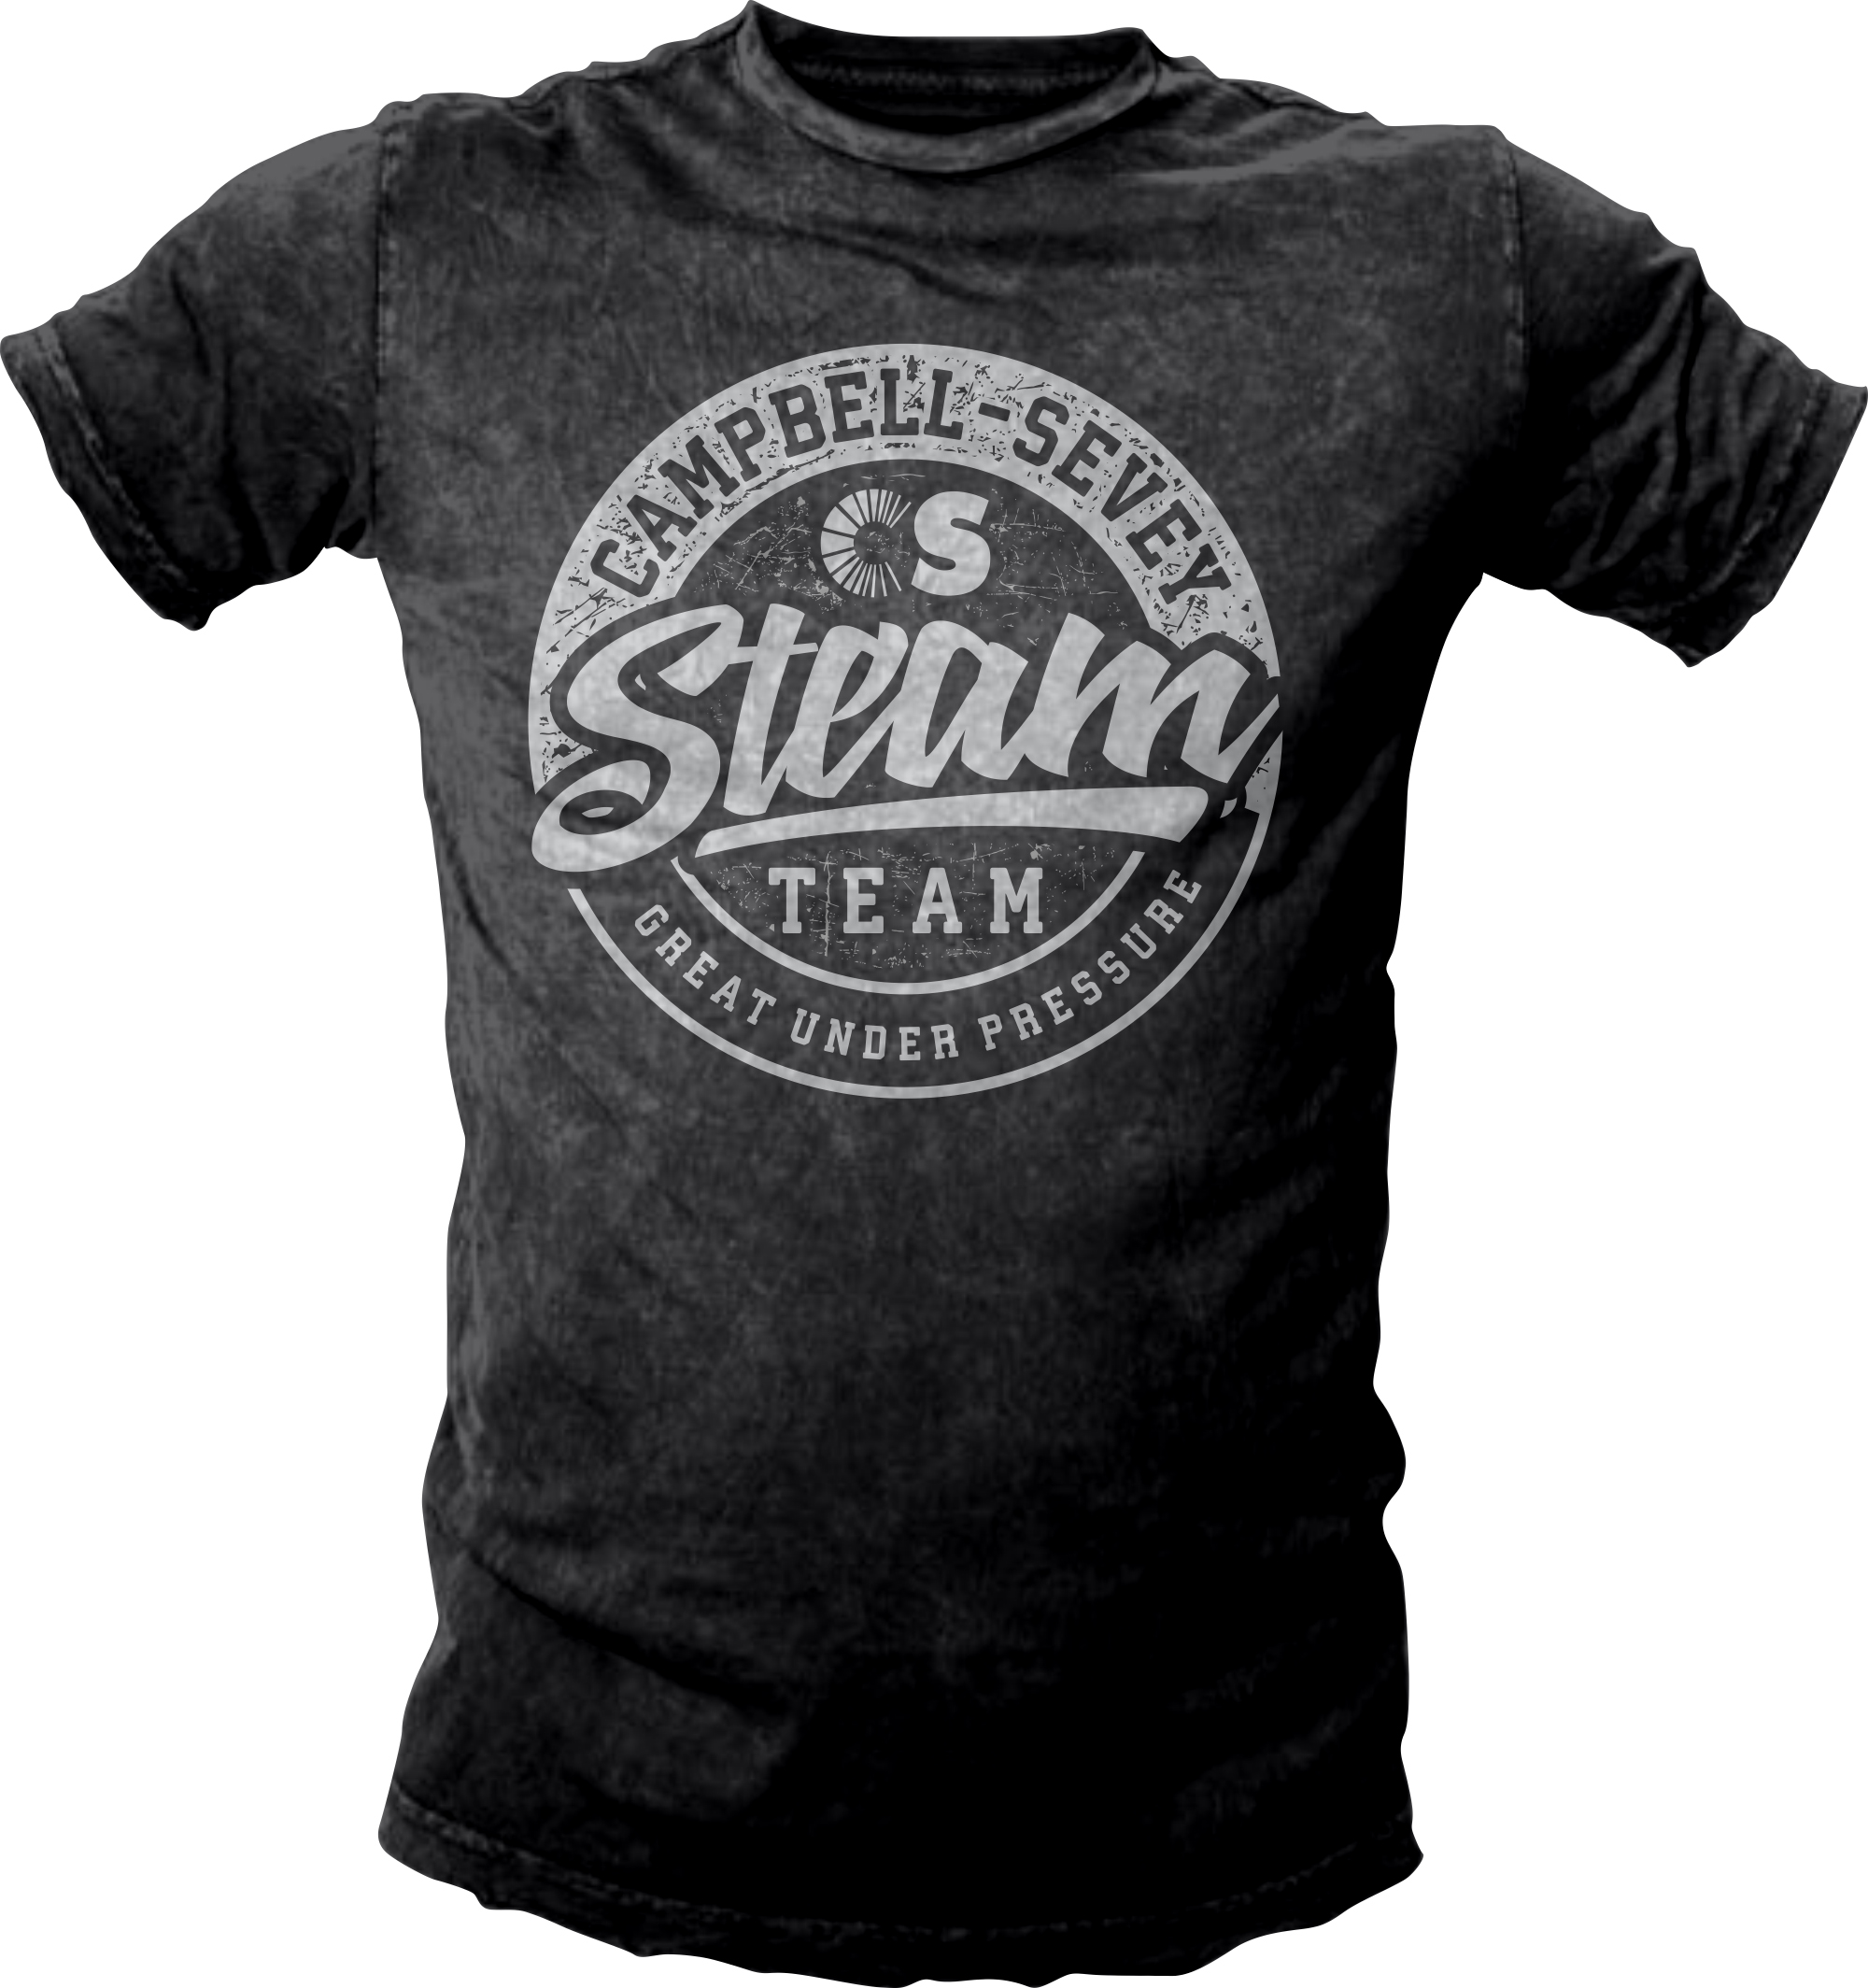 Campbell-Sevey’s “Steam Team” t-shirt